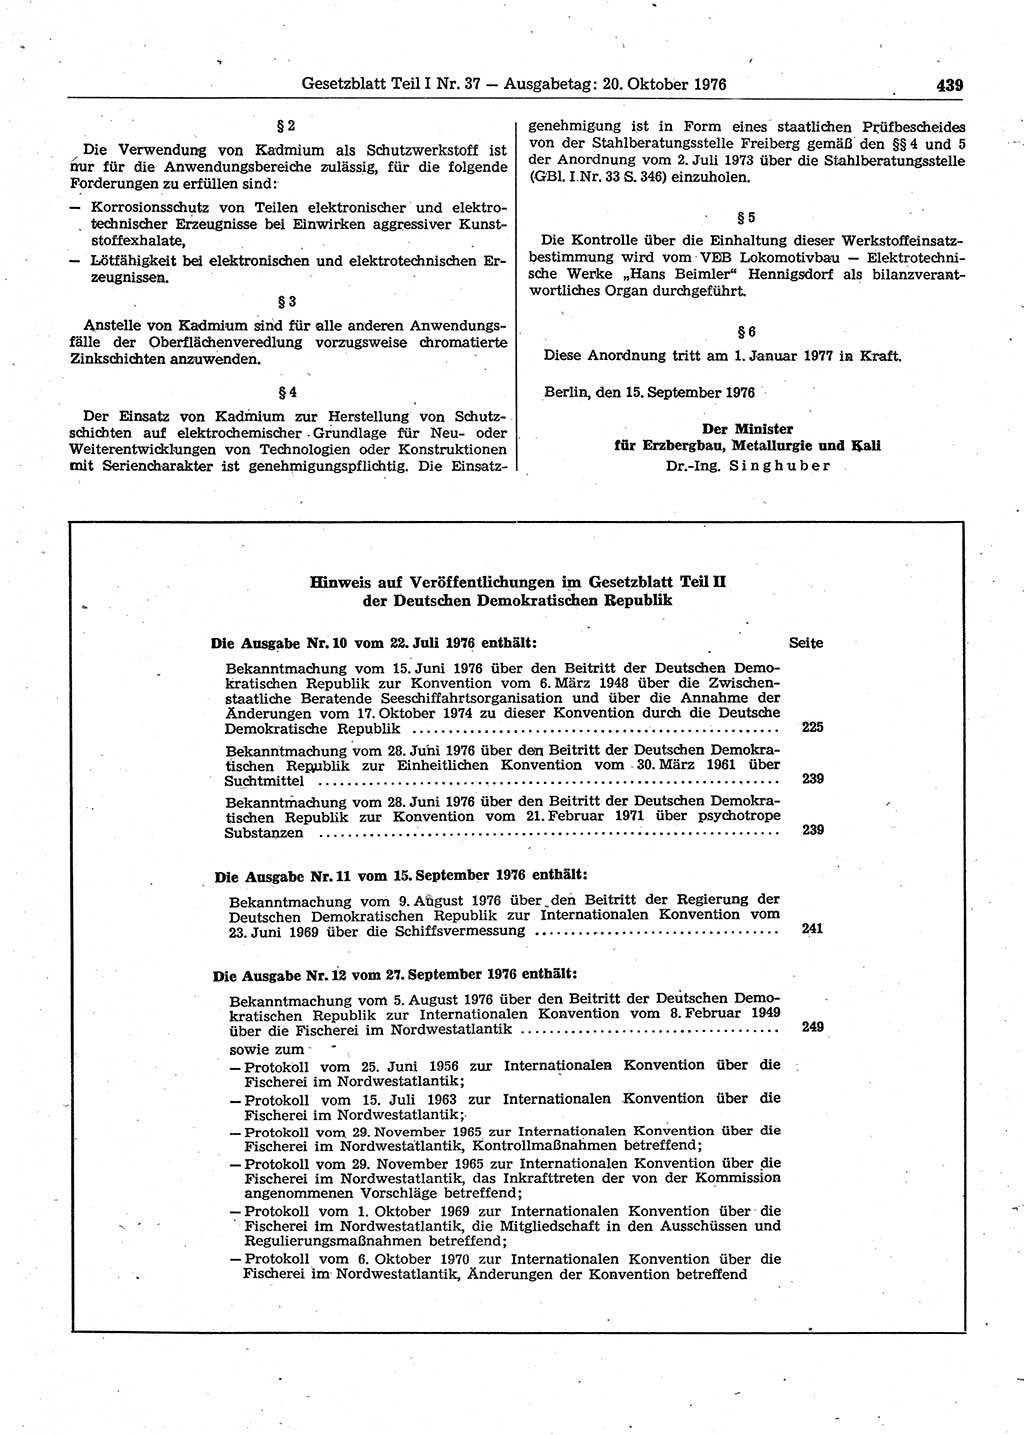 Gesetzblatt (GBl.) der Deutschen Demokratischen Republik (DDR) Teil Ⅰ 1976, Seite 439 (GBl. DDR Ⅰ 1976, S. 439)